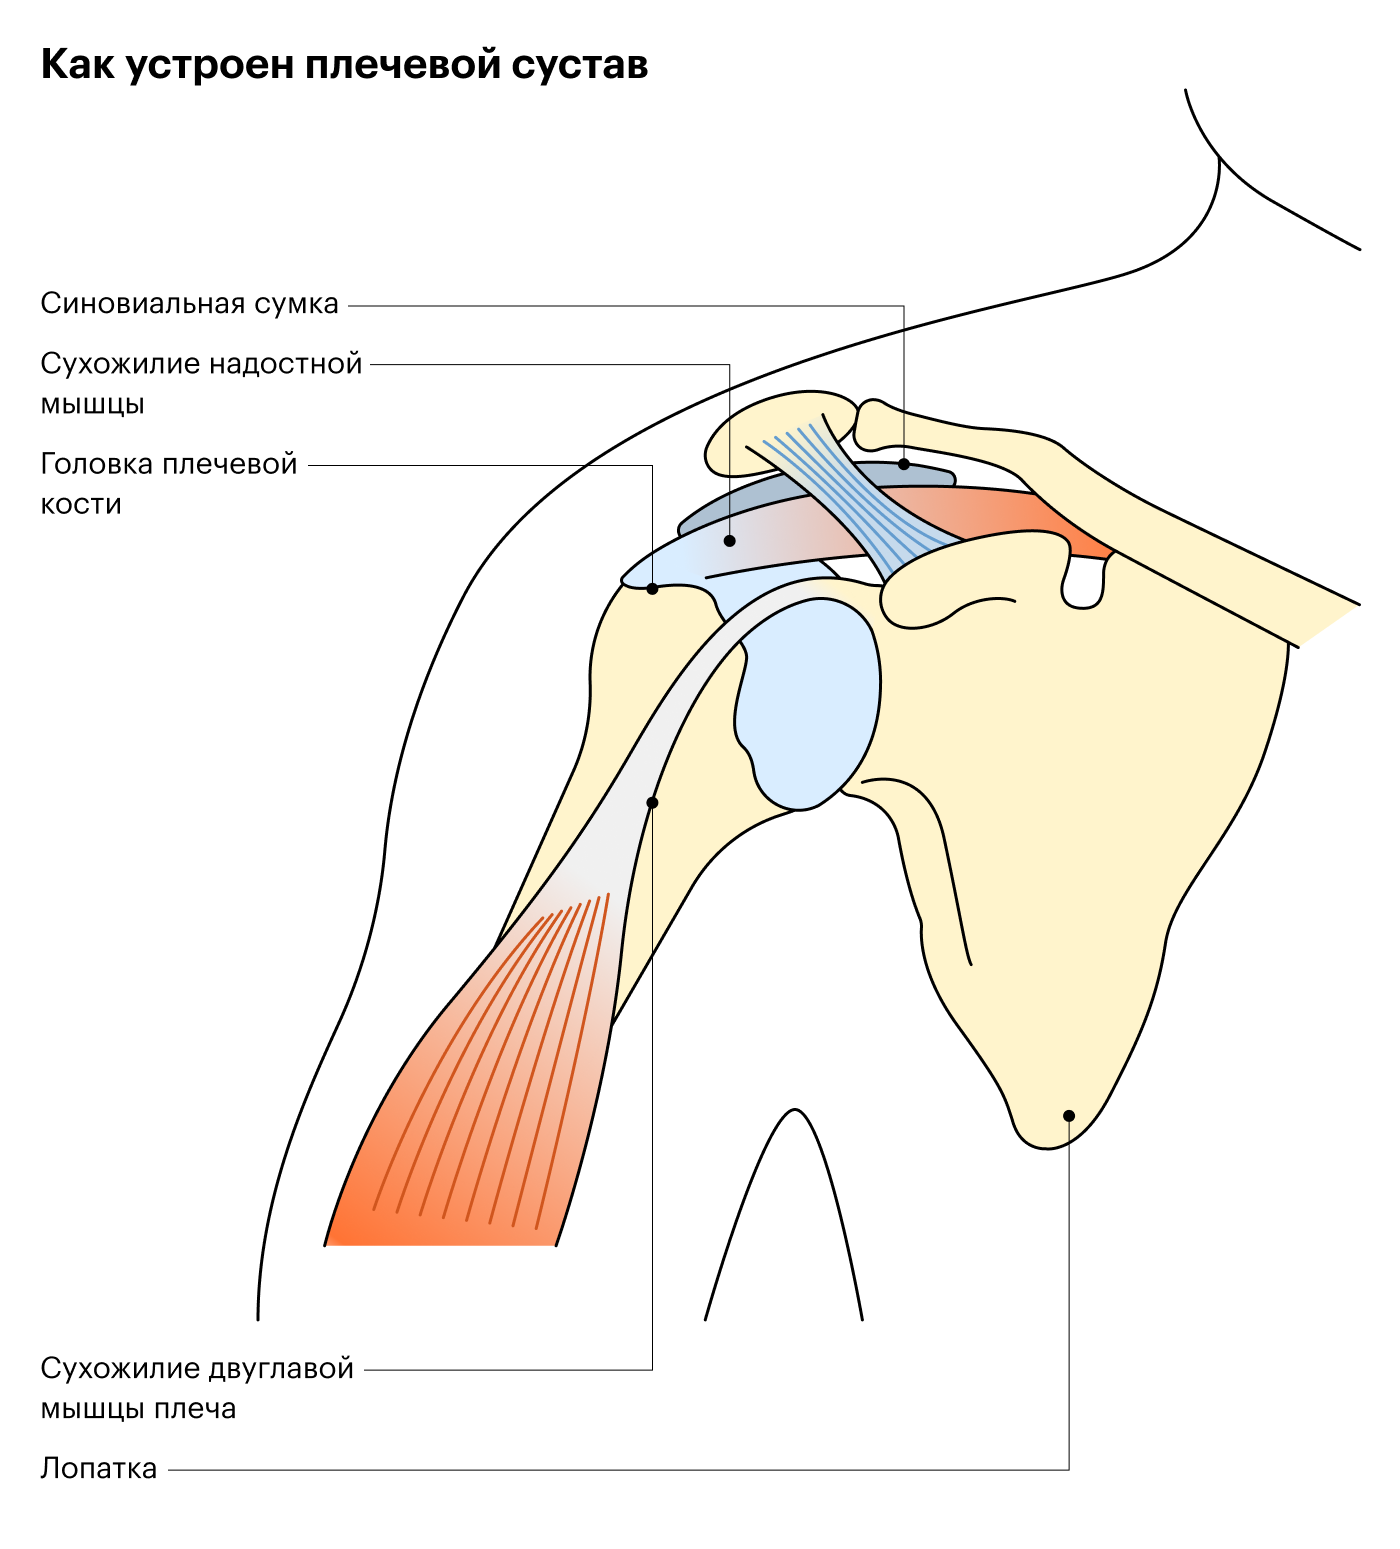 В области плеча чаще воспаляются сухожилие двуглавой мышцы, по-другому — бицепса, и сухожилие надостной мышцы. Часто эти тендиниты сочетаются друг с другом и другими проблемами плечевого сустава, например артритом